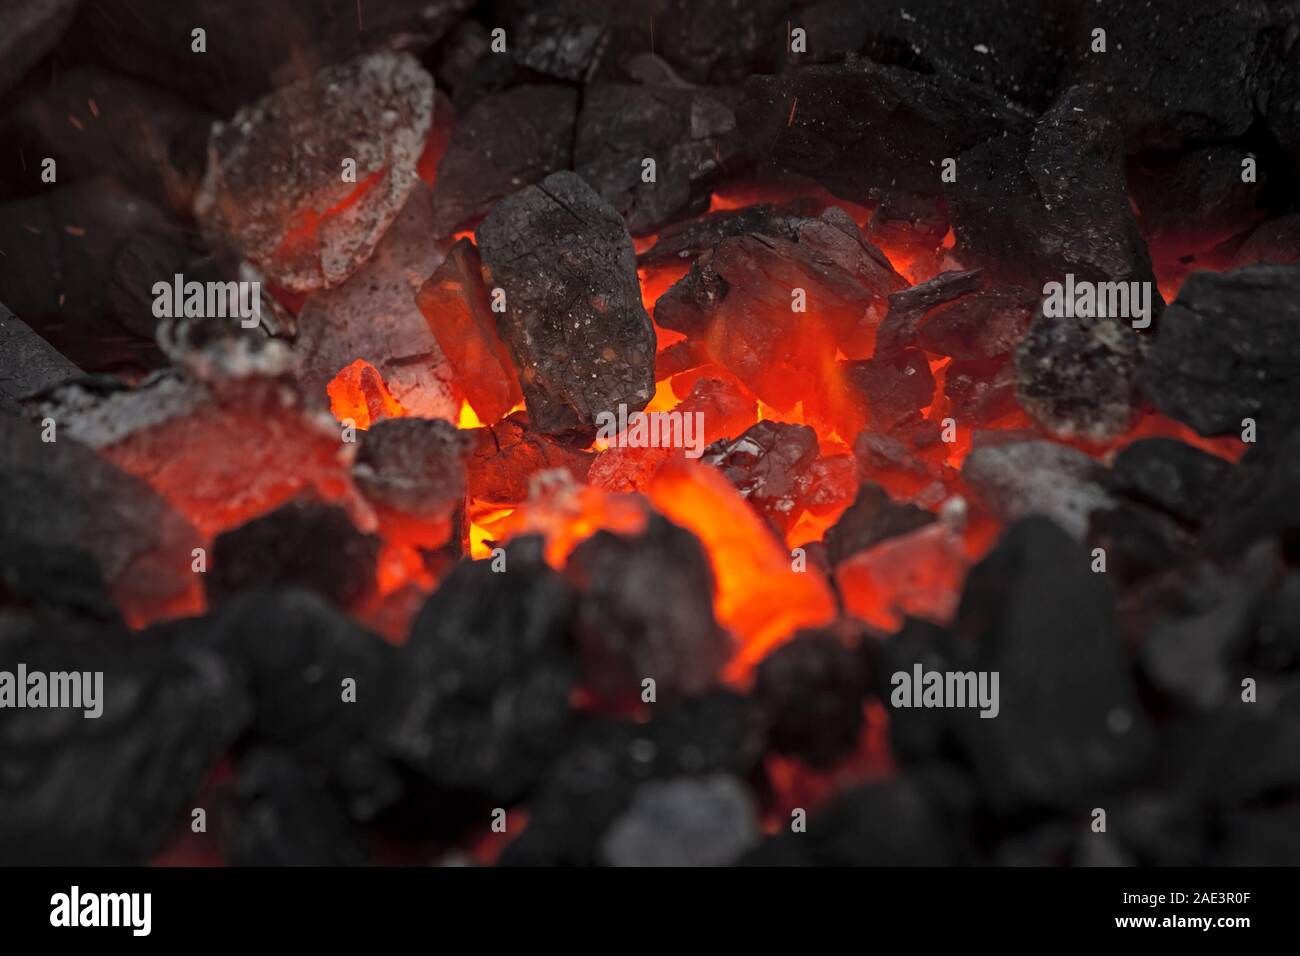 Embers glow in un falò, chiudere la vista. Incendio, calore, carbone e cenere con scintille volanti. Foto Stock